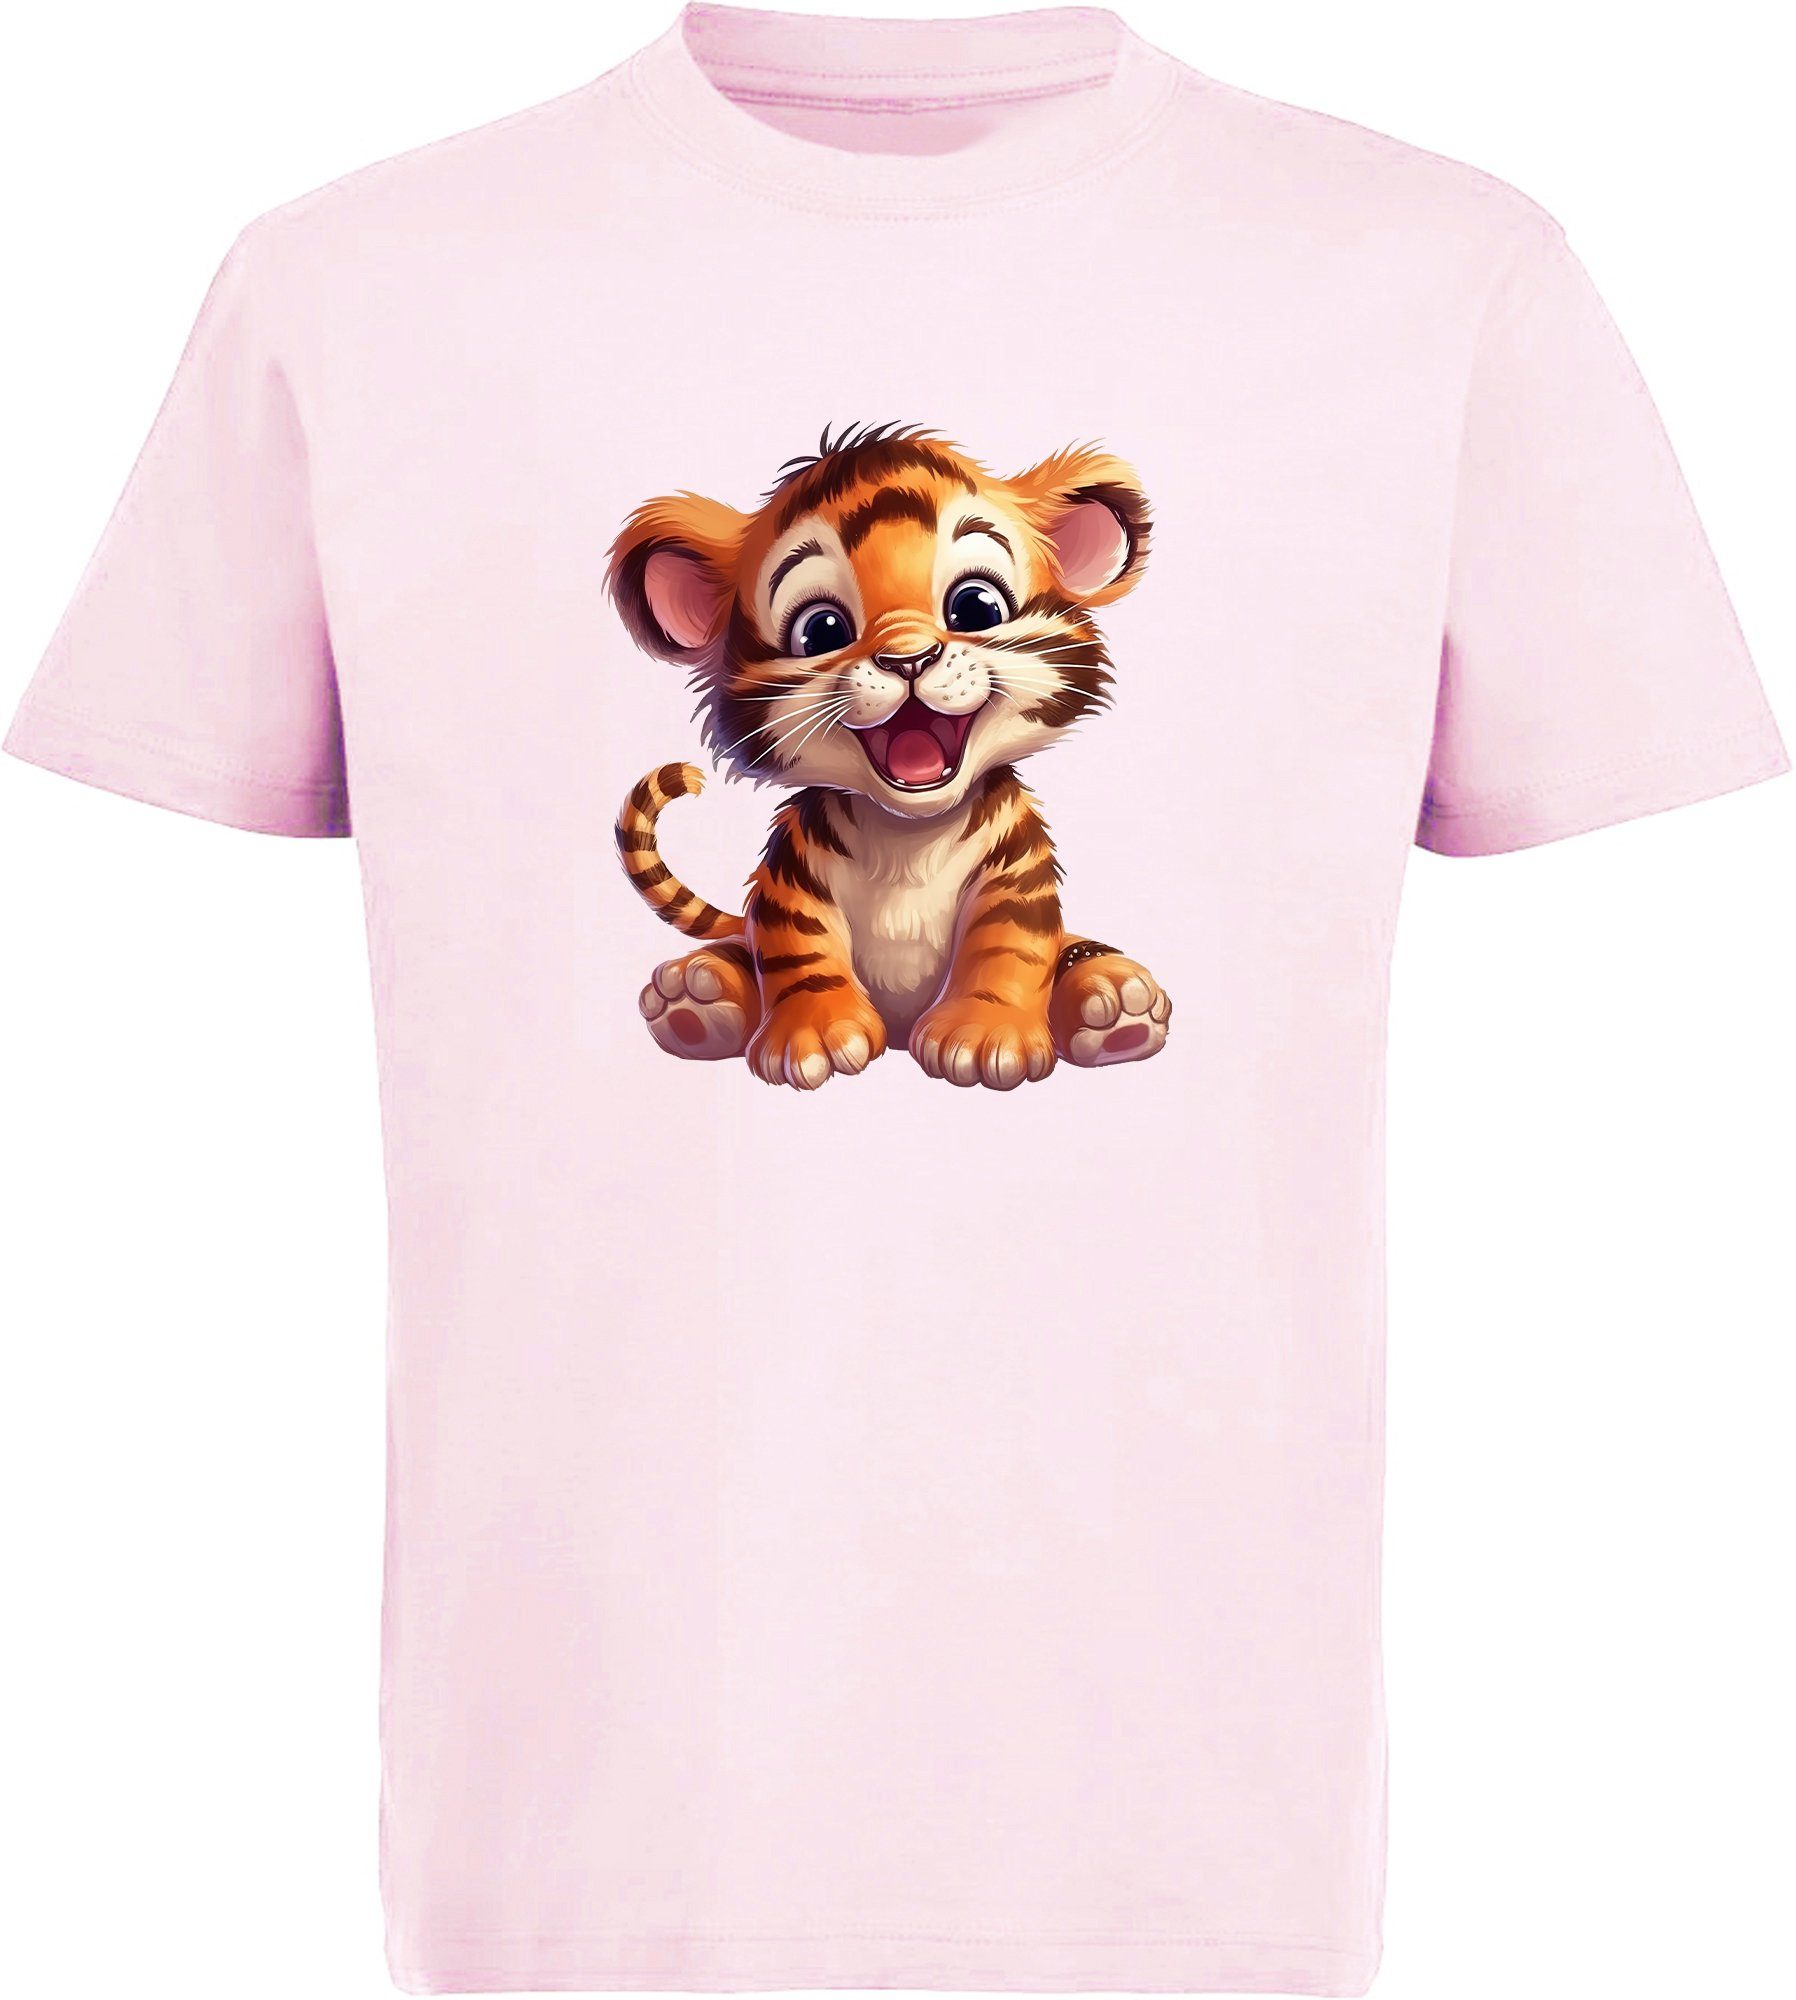 Aufdruck, Wildtier MyDesign24 i266 Baby mit - T-Shirt Tiger Kinder bedruckt rosa Print Baumwollshirt Shirt